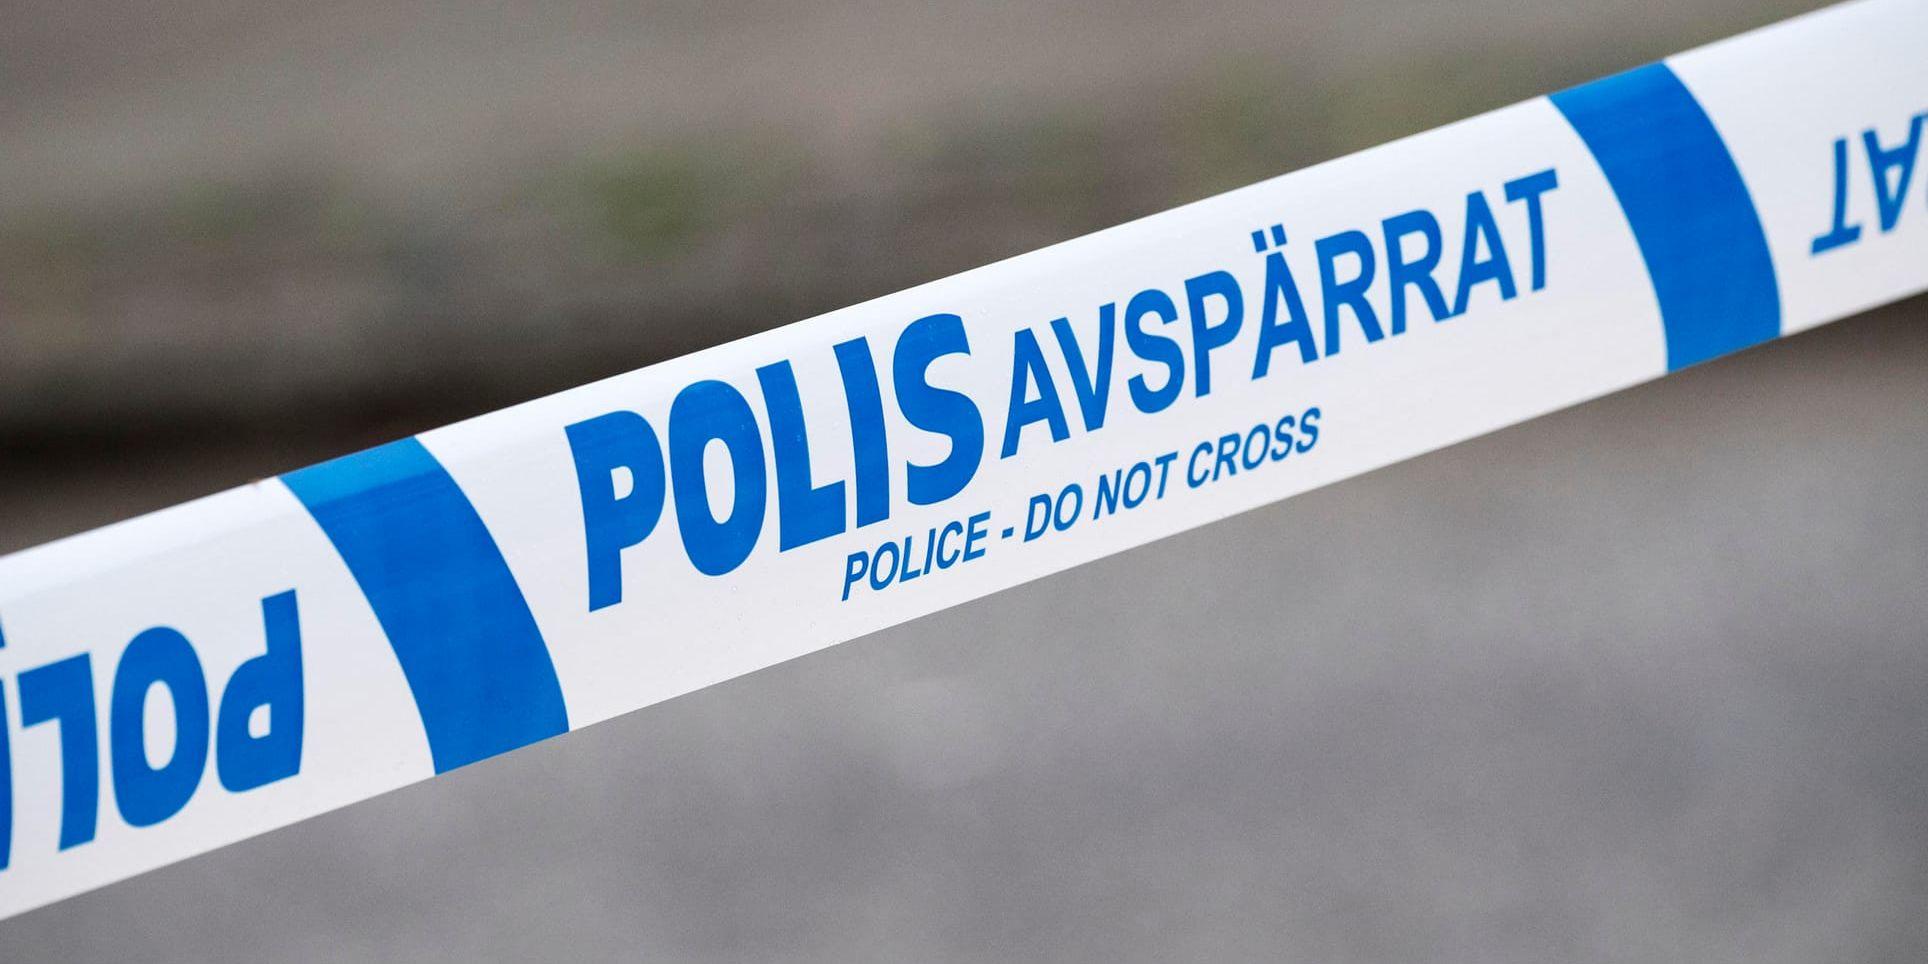 En död person har hittats i ett skogsparti söder om Eskilstuna och polisen har inlett förundersökning om mord. Arkivbild.